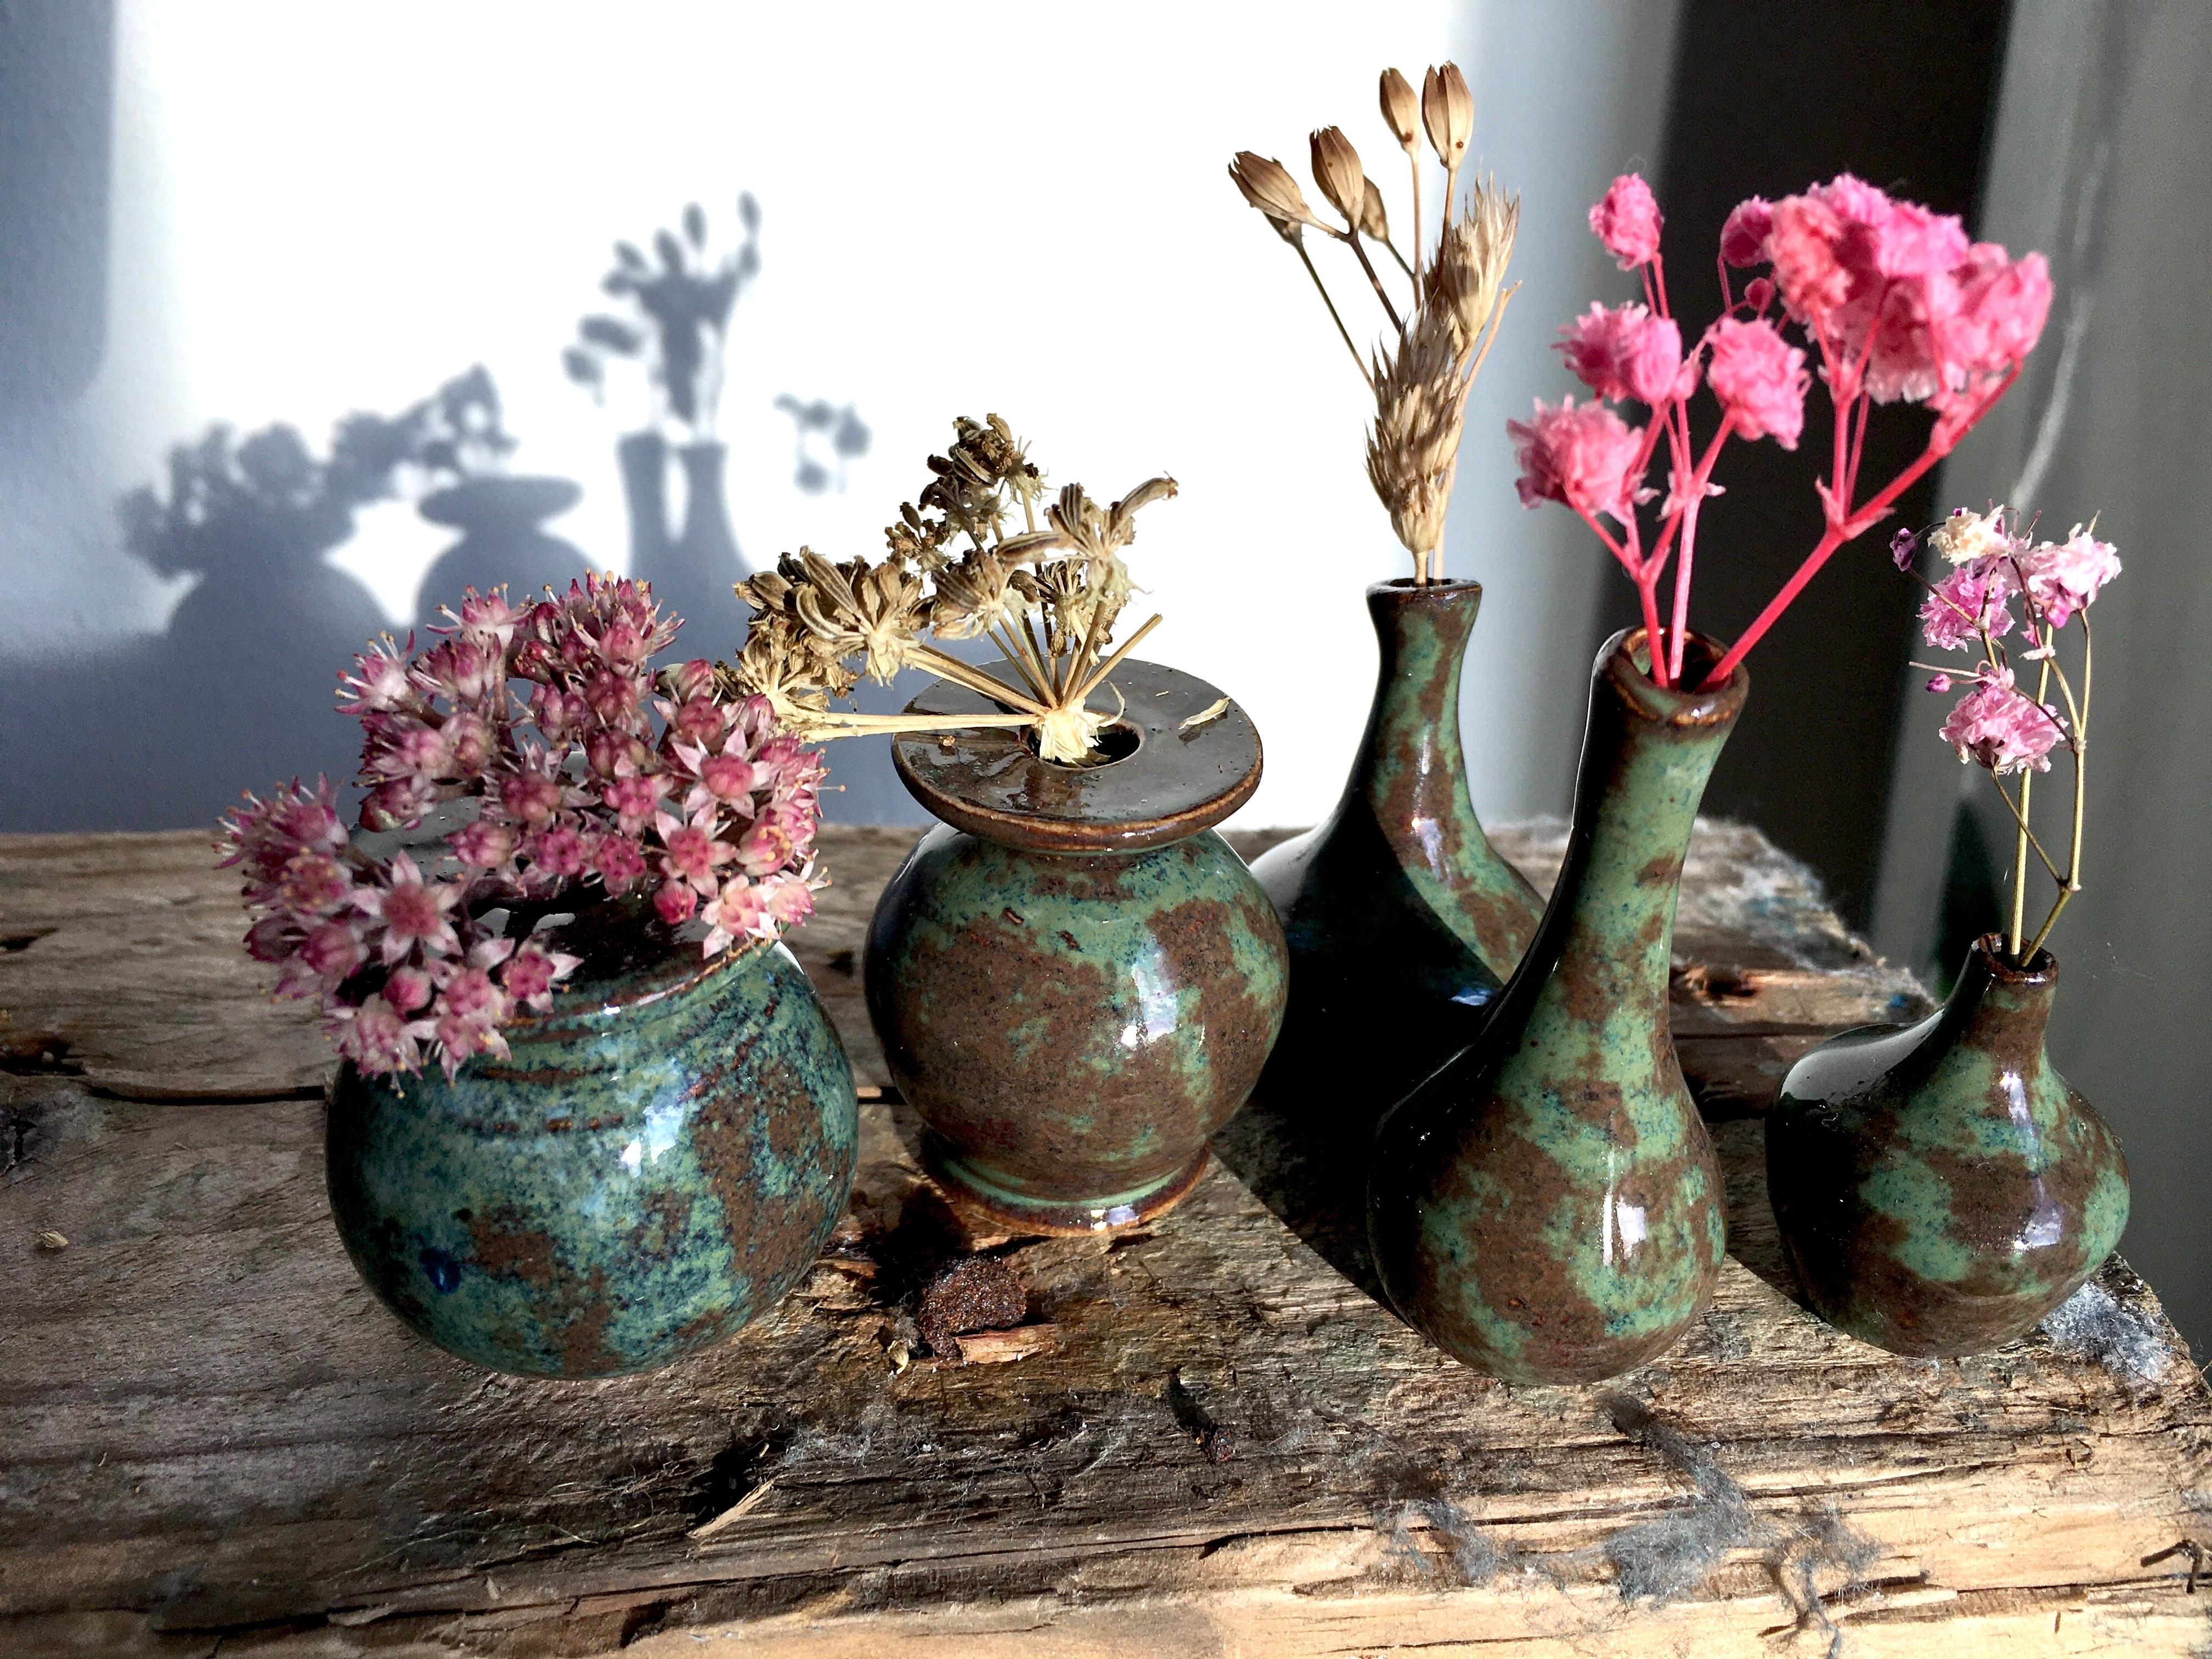 wilde Deko mit Miniaturvasen und Trockenblumen + Altholzbrett #trockenblumen #minivasen #70er